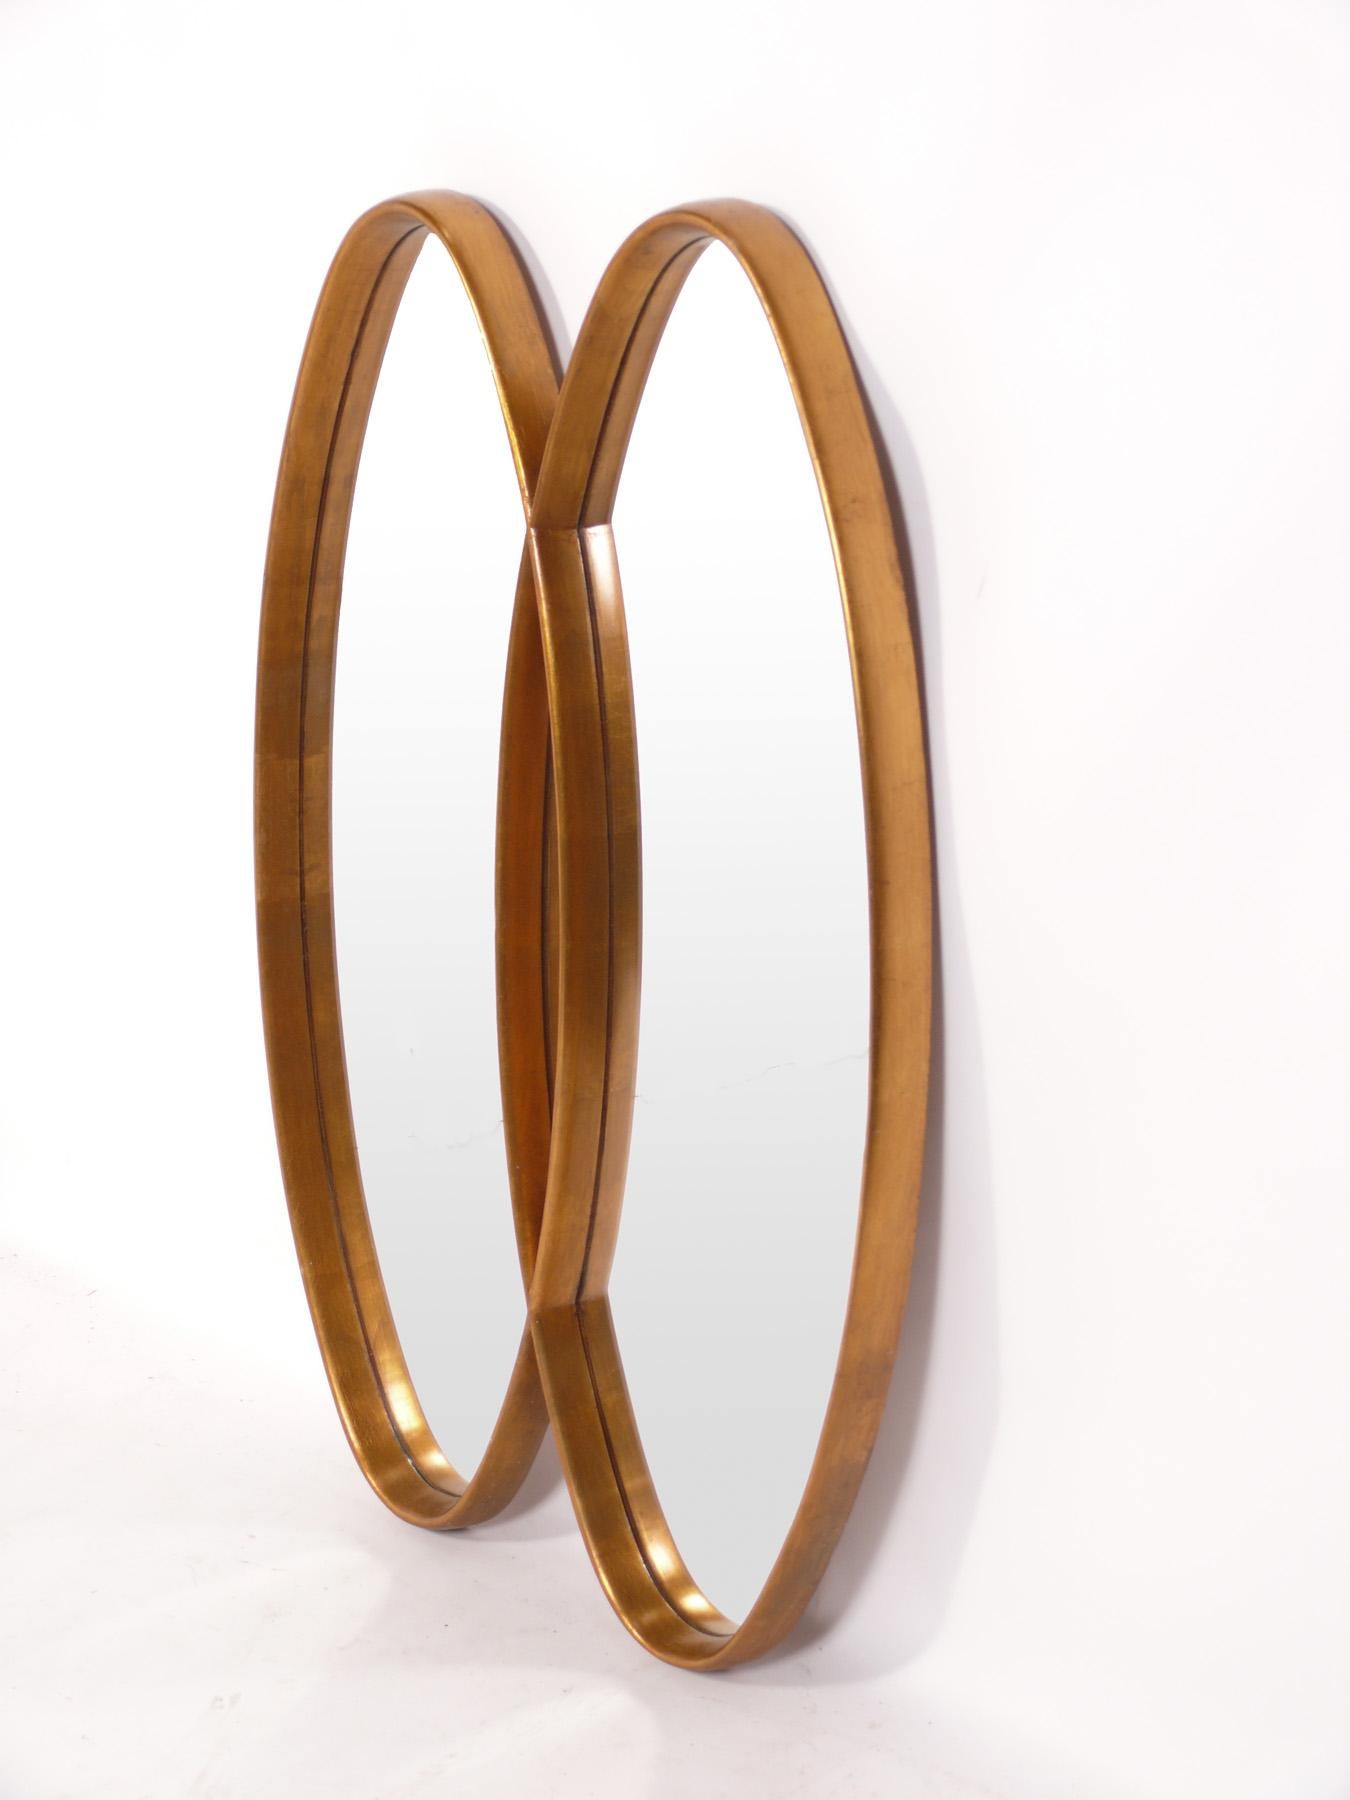 Skulpturaler doppelter ovaler vergoldeter Spiegel, amerikanisch, ca. 1960er Jahre. Dieser Spiegel hat eine skulpturale Form und fügt sich nahtlos in ein breites Spektrum von Interieurs ein, von traditionell bis hochmodern.